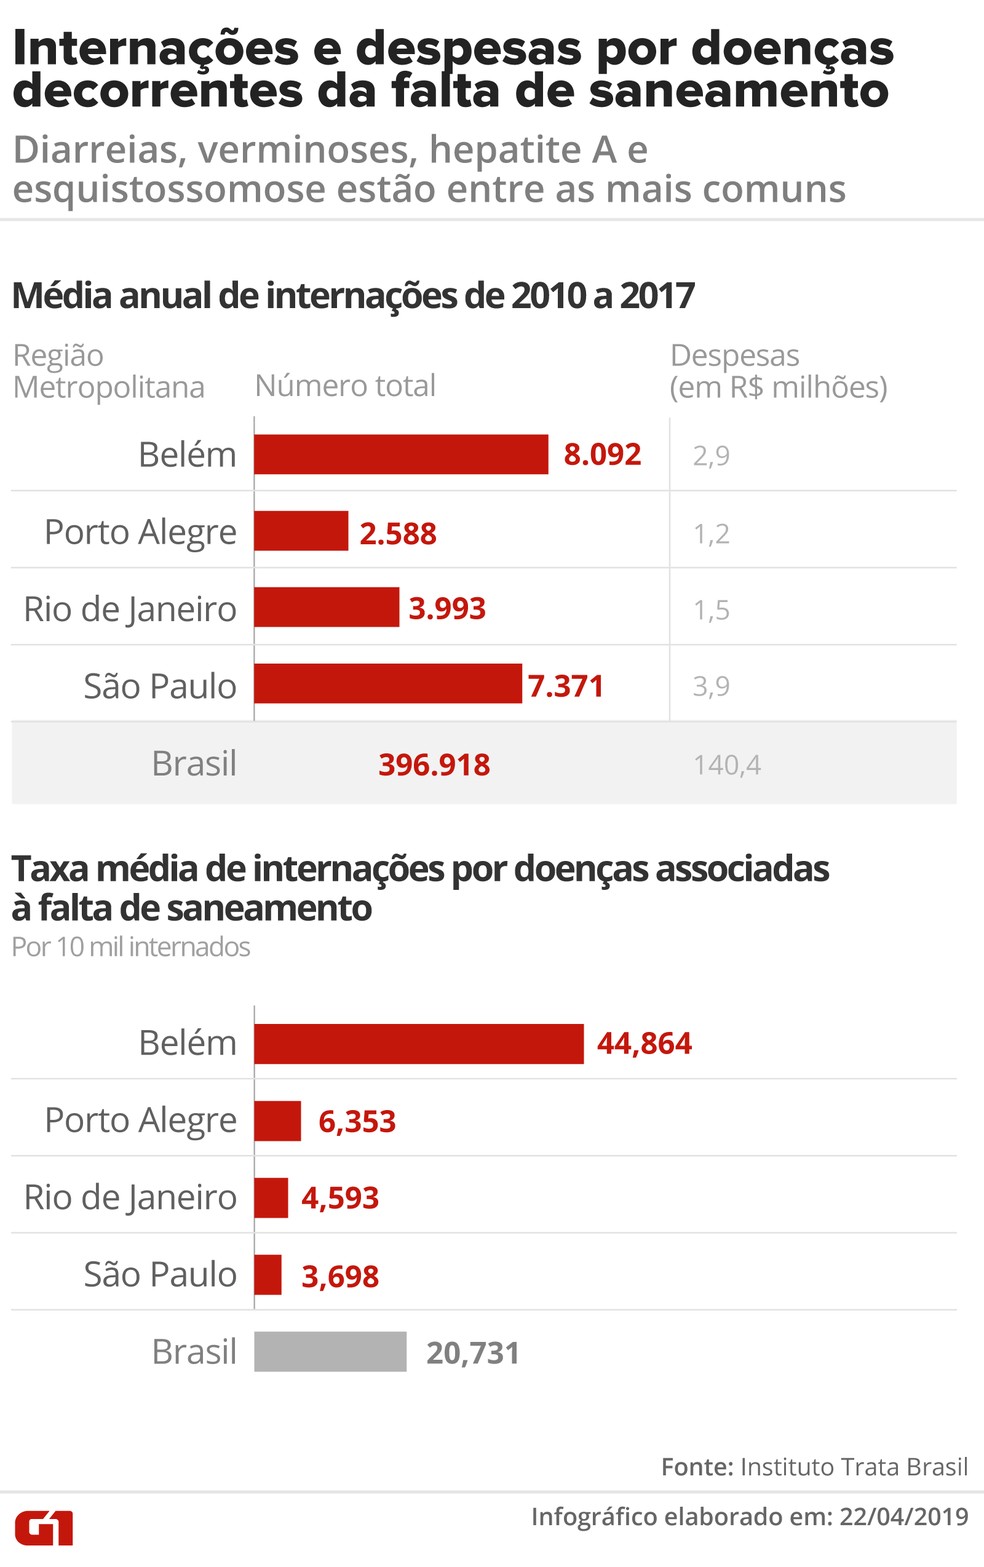 Gastos com internações e despesas de saúde pública no Brasil provocados pela falta de saneamento em algumas das principais regiões metropolitanas do país entre 2010 e 2017 — Foto: Igor Estrella/G1